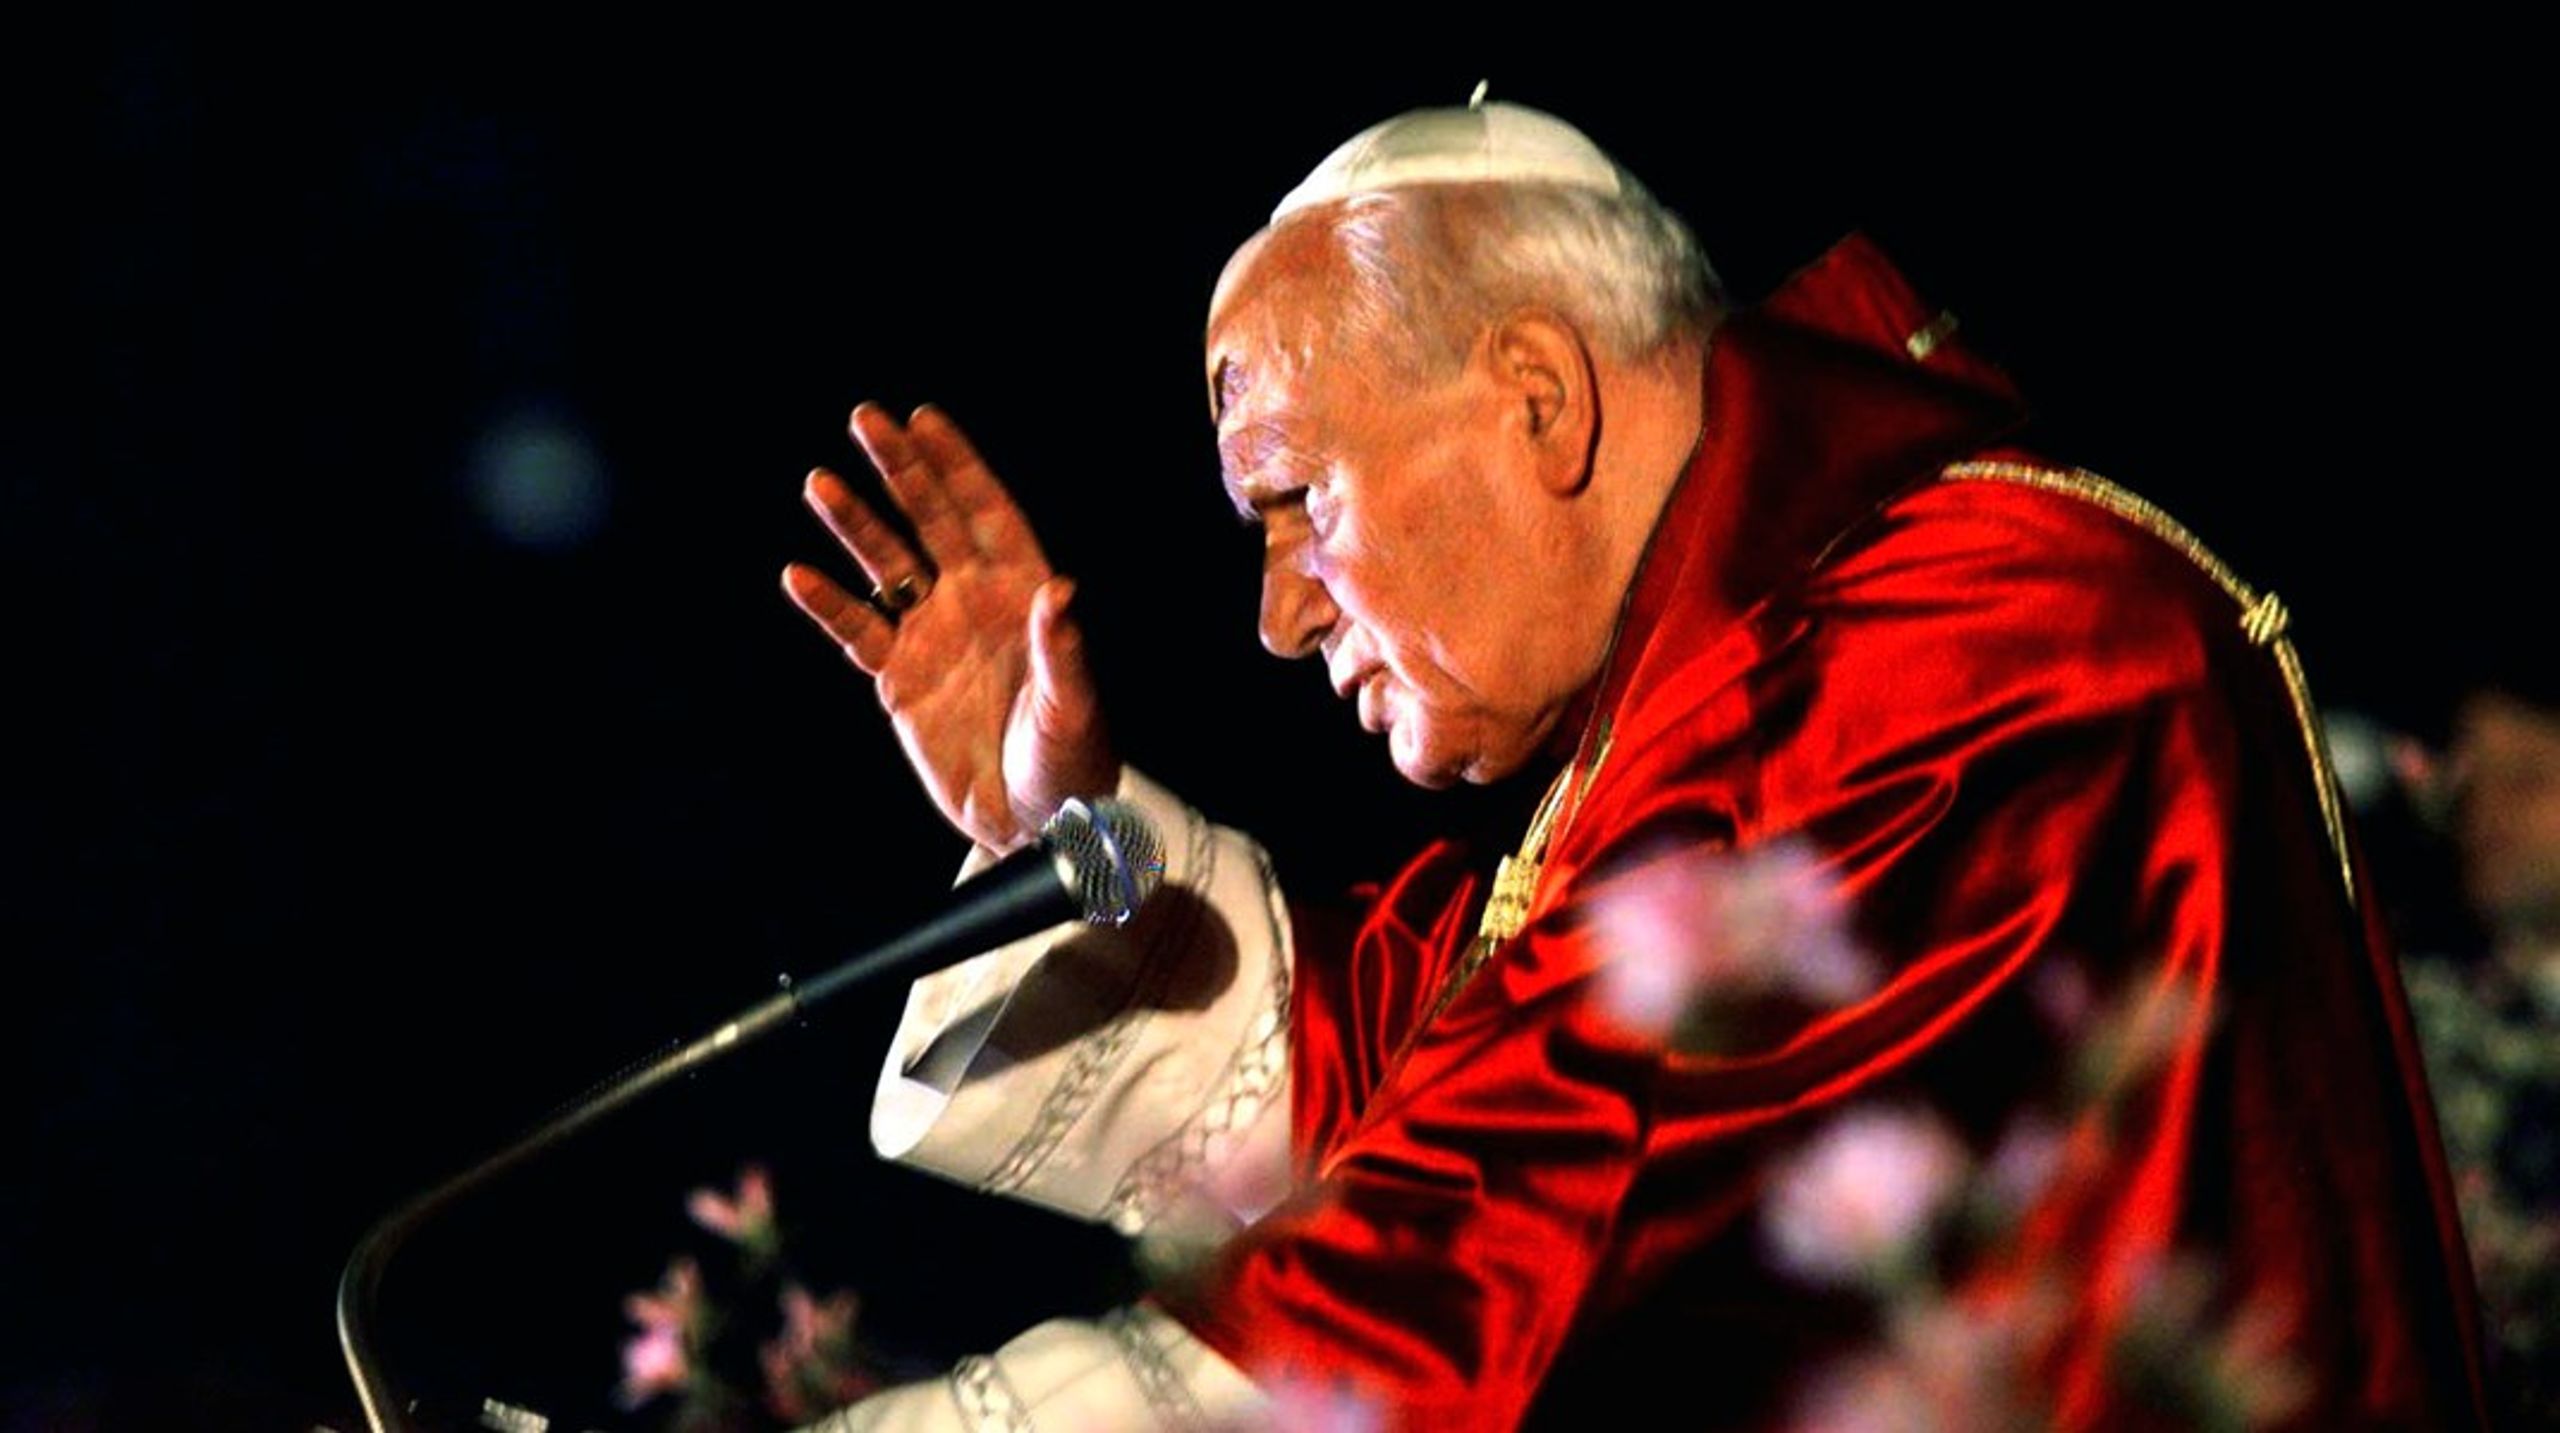 Når Johannes Paul II i dag bliver nævnt, er det ikke kun manden selv og hans egne gerninger, men også den store symbolværdi, hans udnævnelse til pave udgjorde, der berøres, skriver&nbsp;Vibe Termansen.